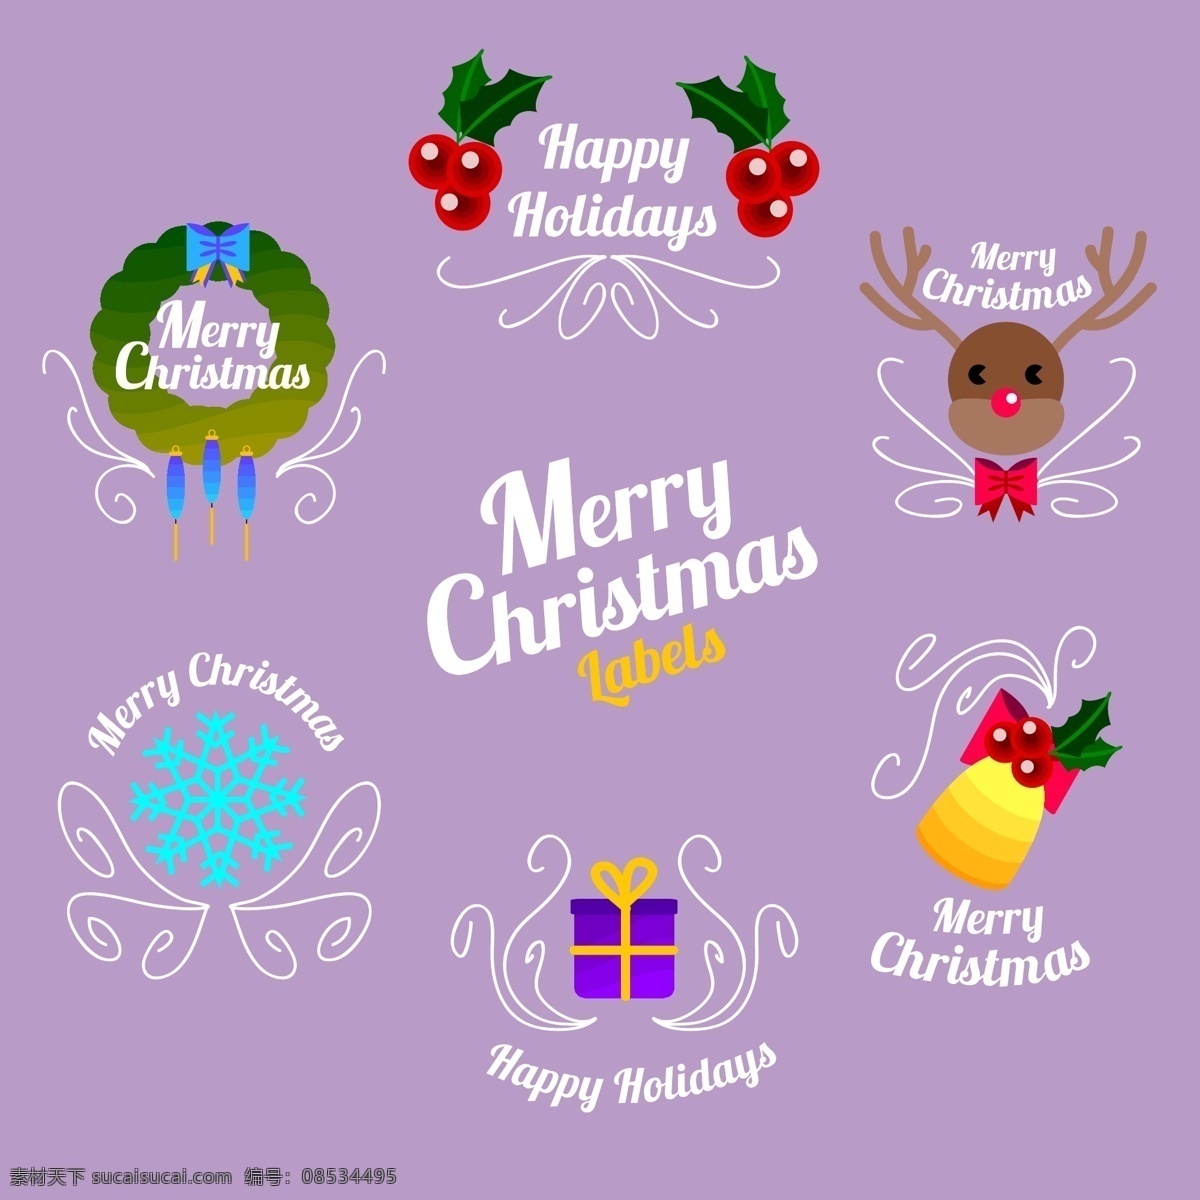 卡通 圣诞节 英文 标签 礼物 雪花 矢量素材 驯鹿 铃铛 花环